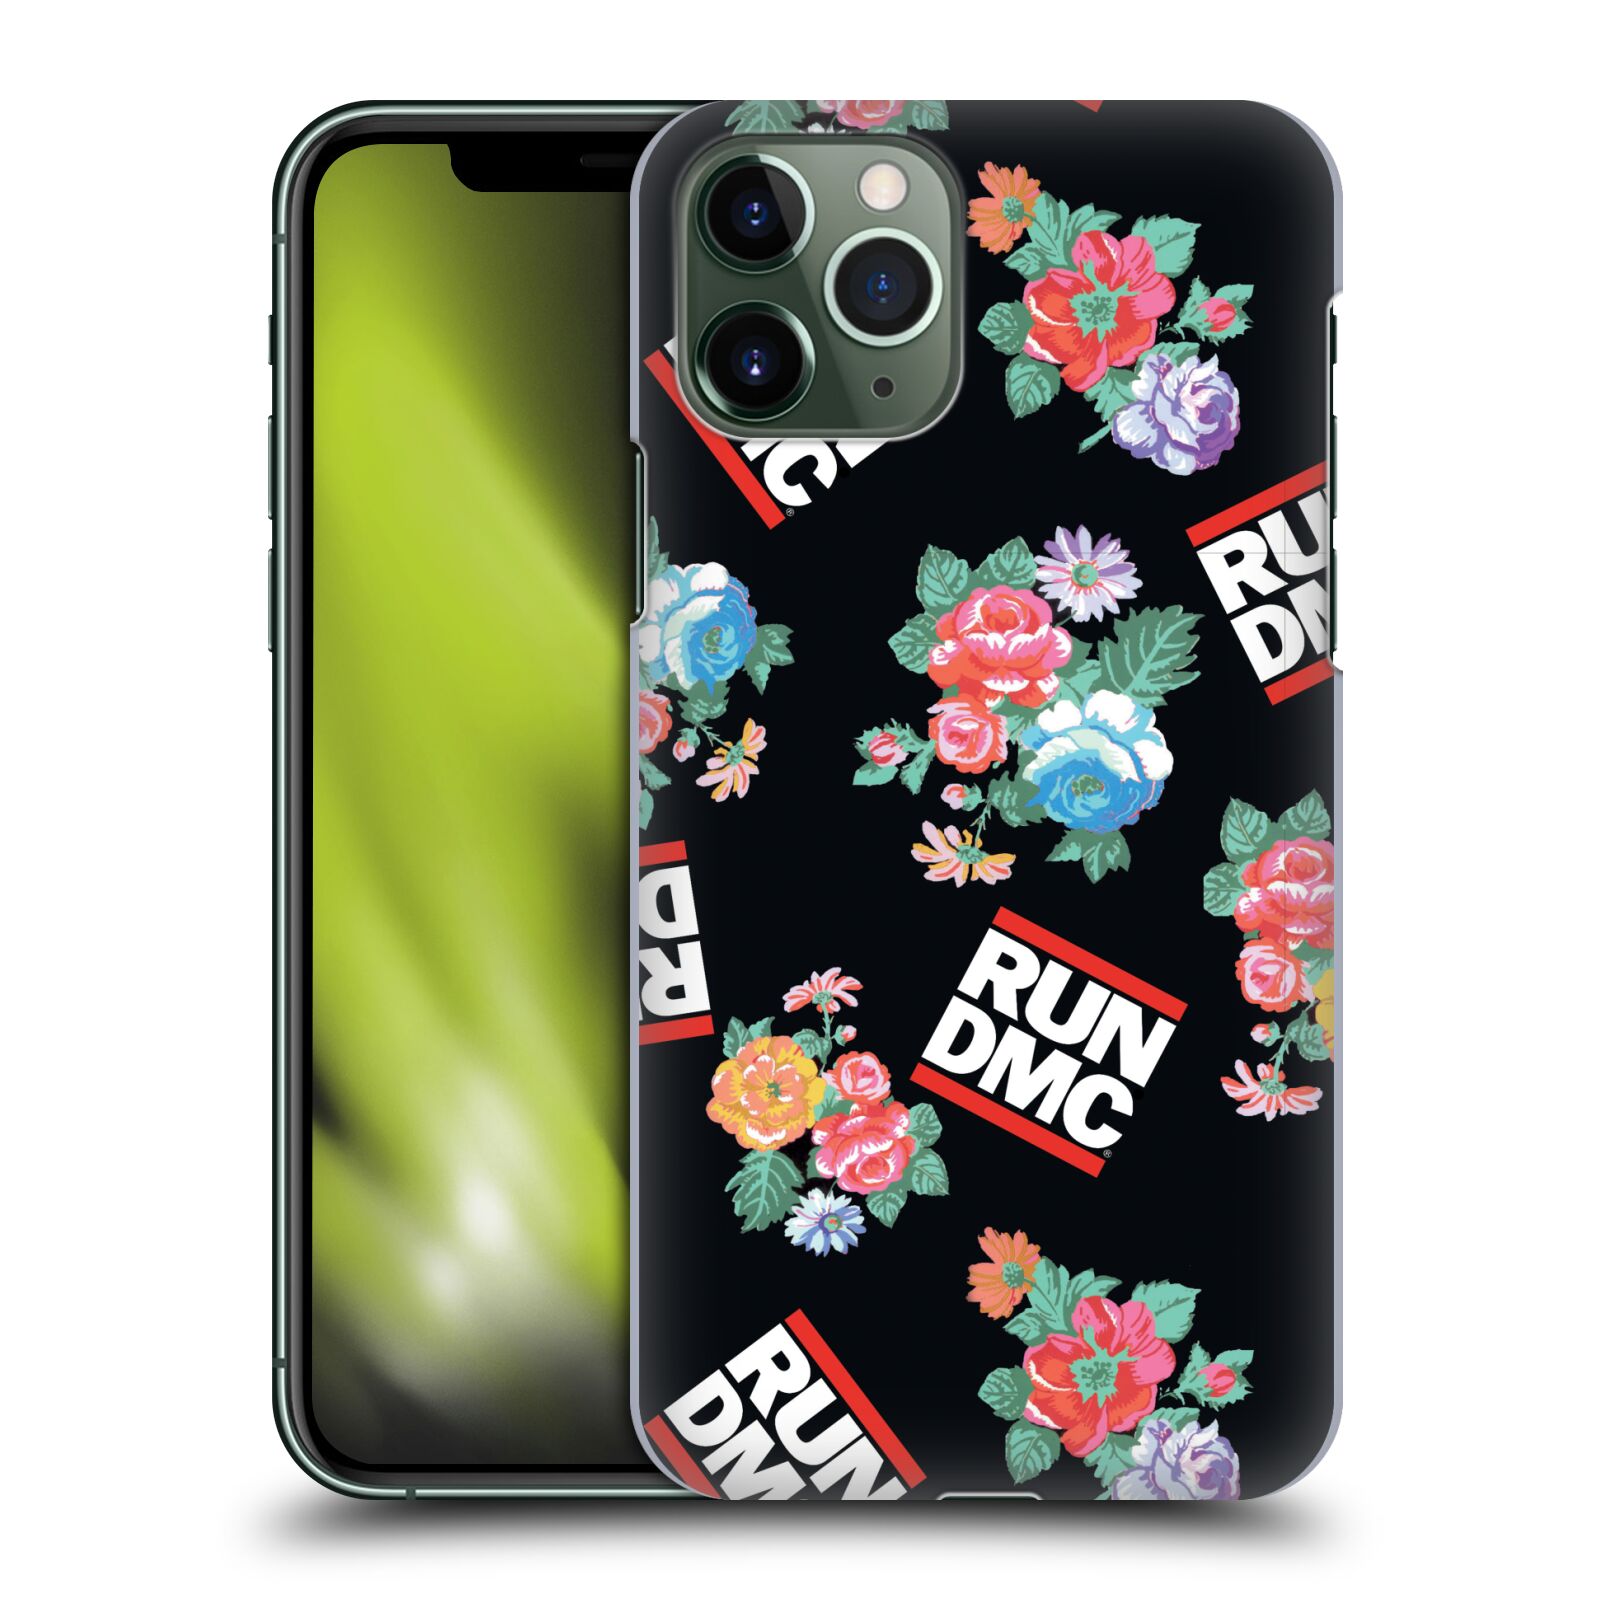 Pouzdro na mobil Apple Iphone 11 PRO - HEAD CASE - rapová kapela Run DMC květiny černé pozadí